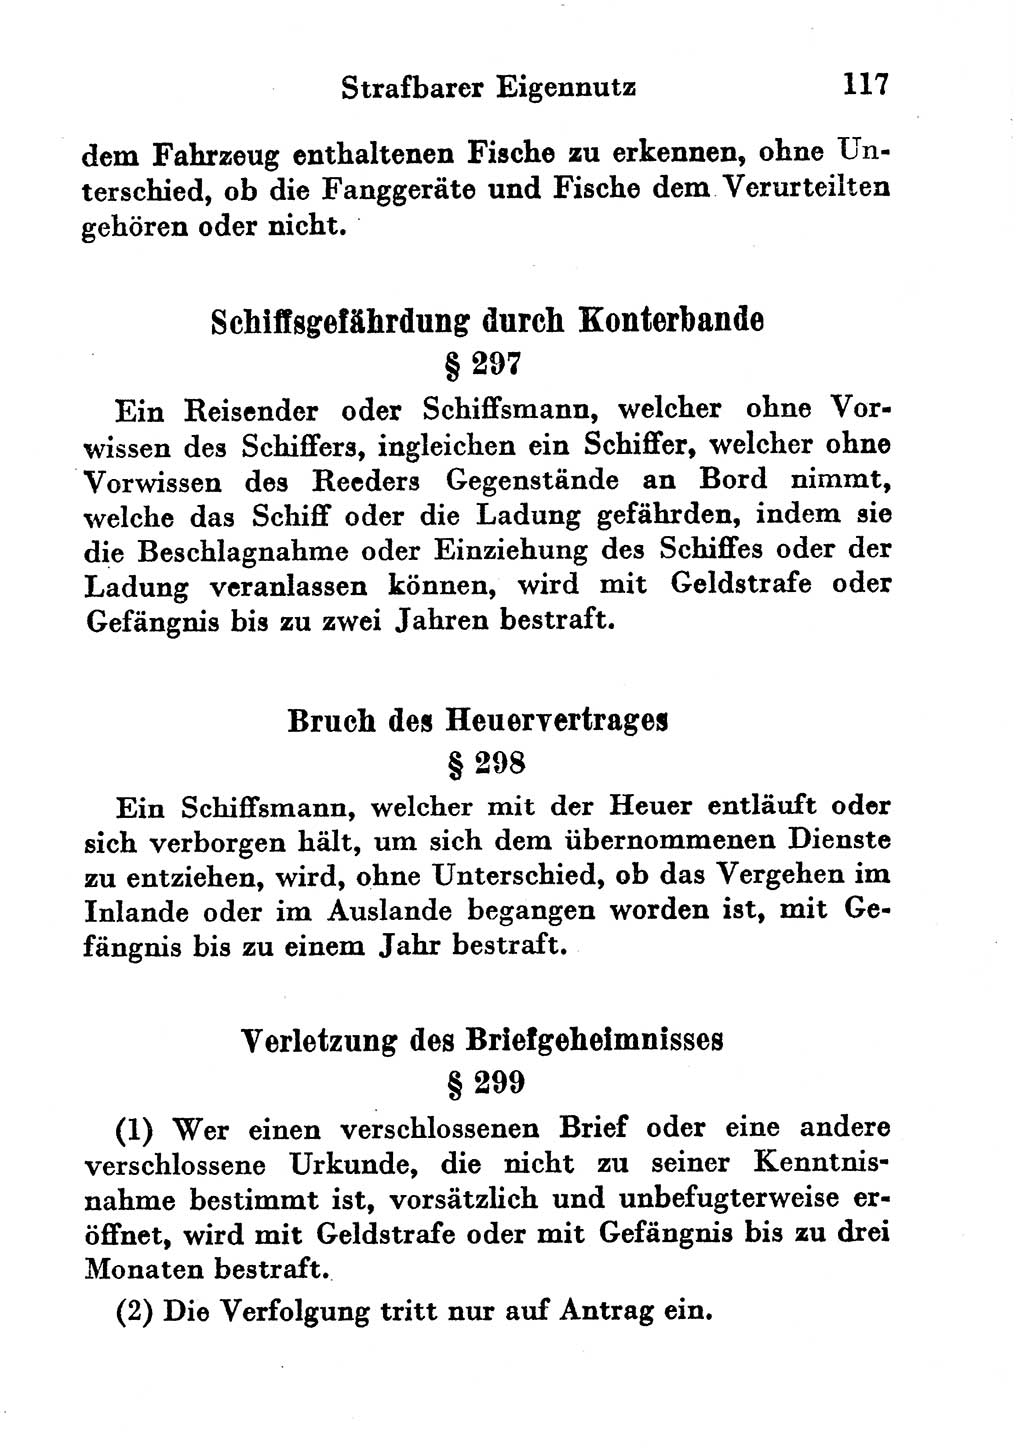 Strafgesetzbuch (StGB) und andere Strafgesetze [Deutsche Demokratische Republik (DDR)] 1956, Seite 117 (StGB Strafges. DDR 1956, S. 117)